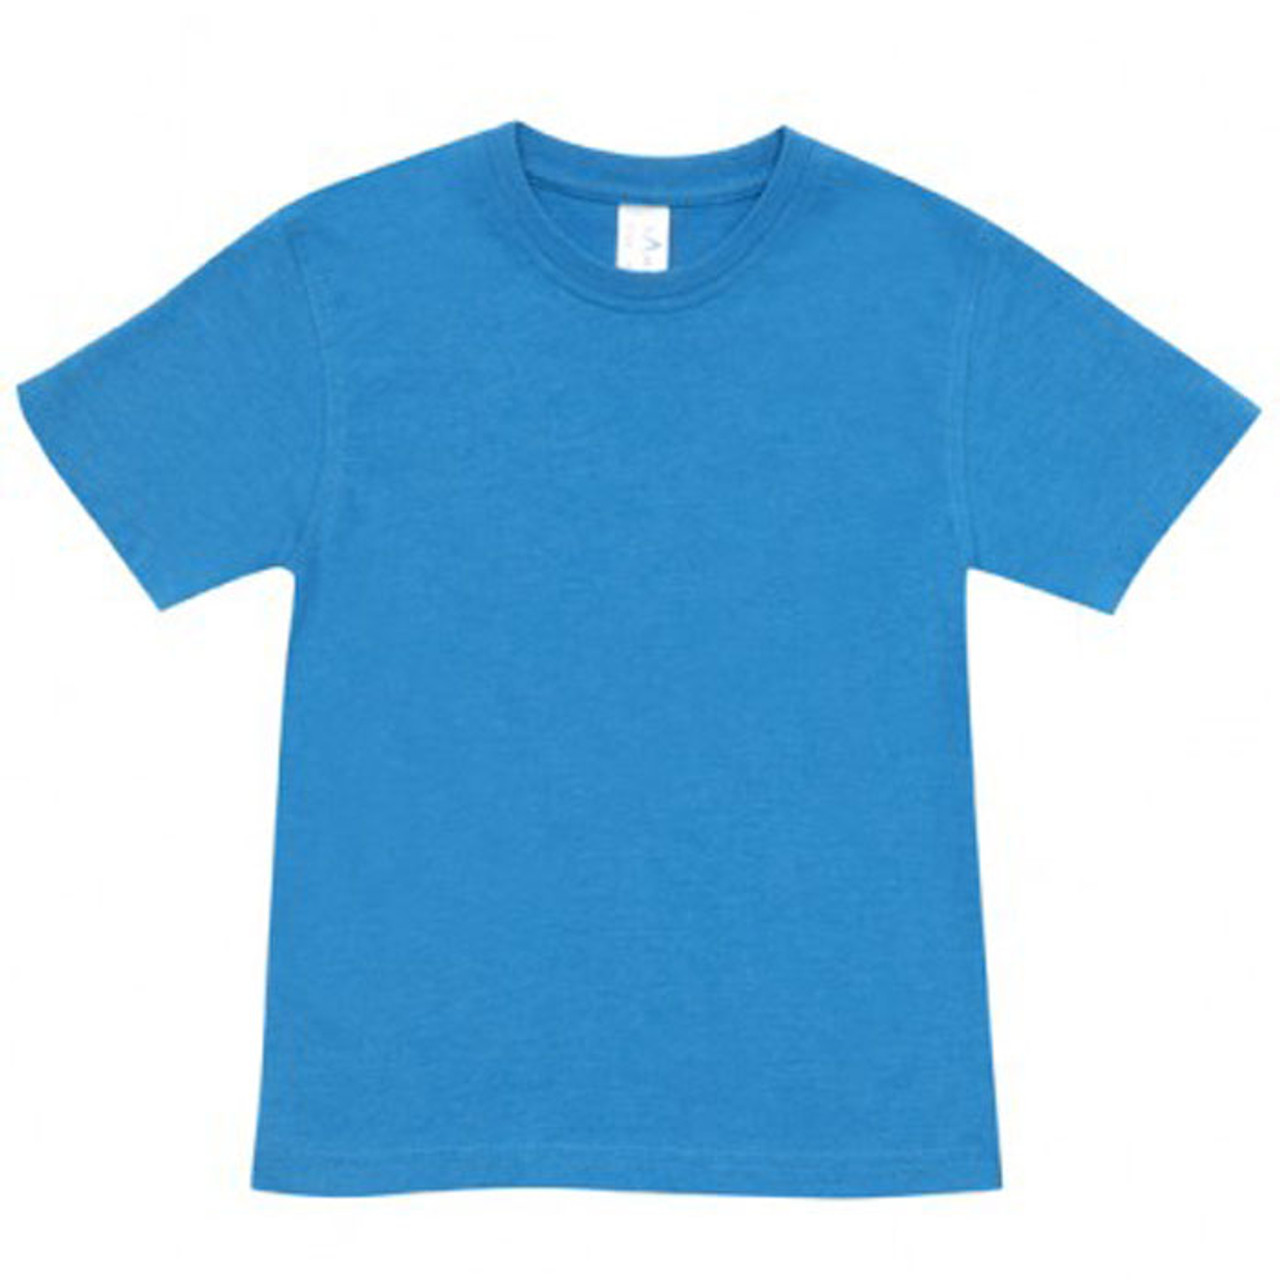 Shop Kids/Baby Marl Vintage Look Tshirt | Bulk Buy Childrens Blank Tees ...